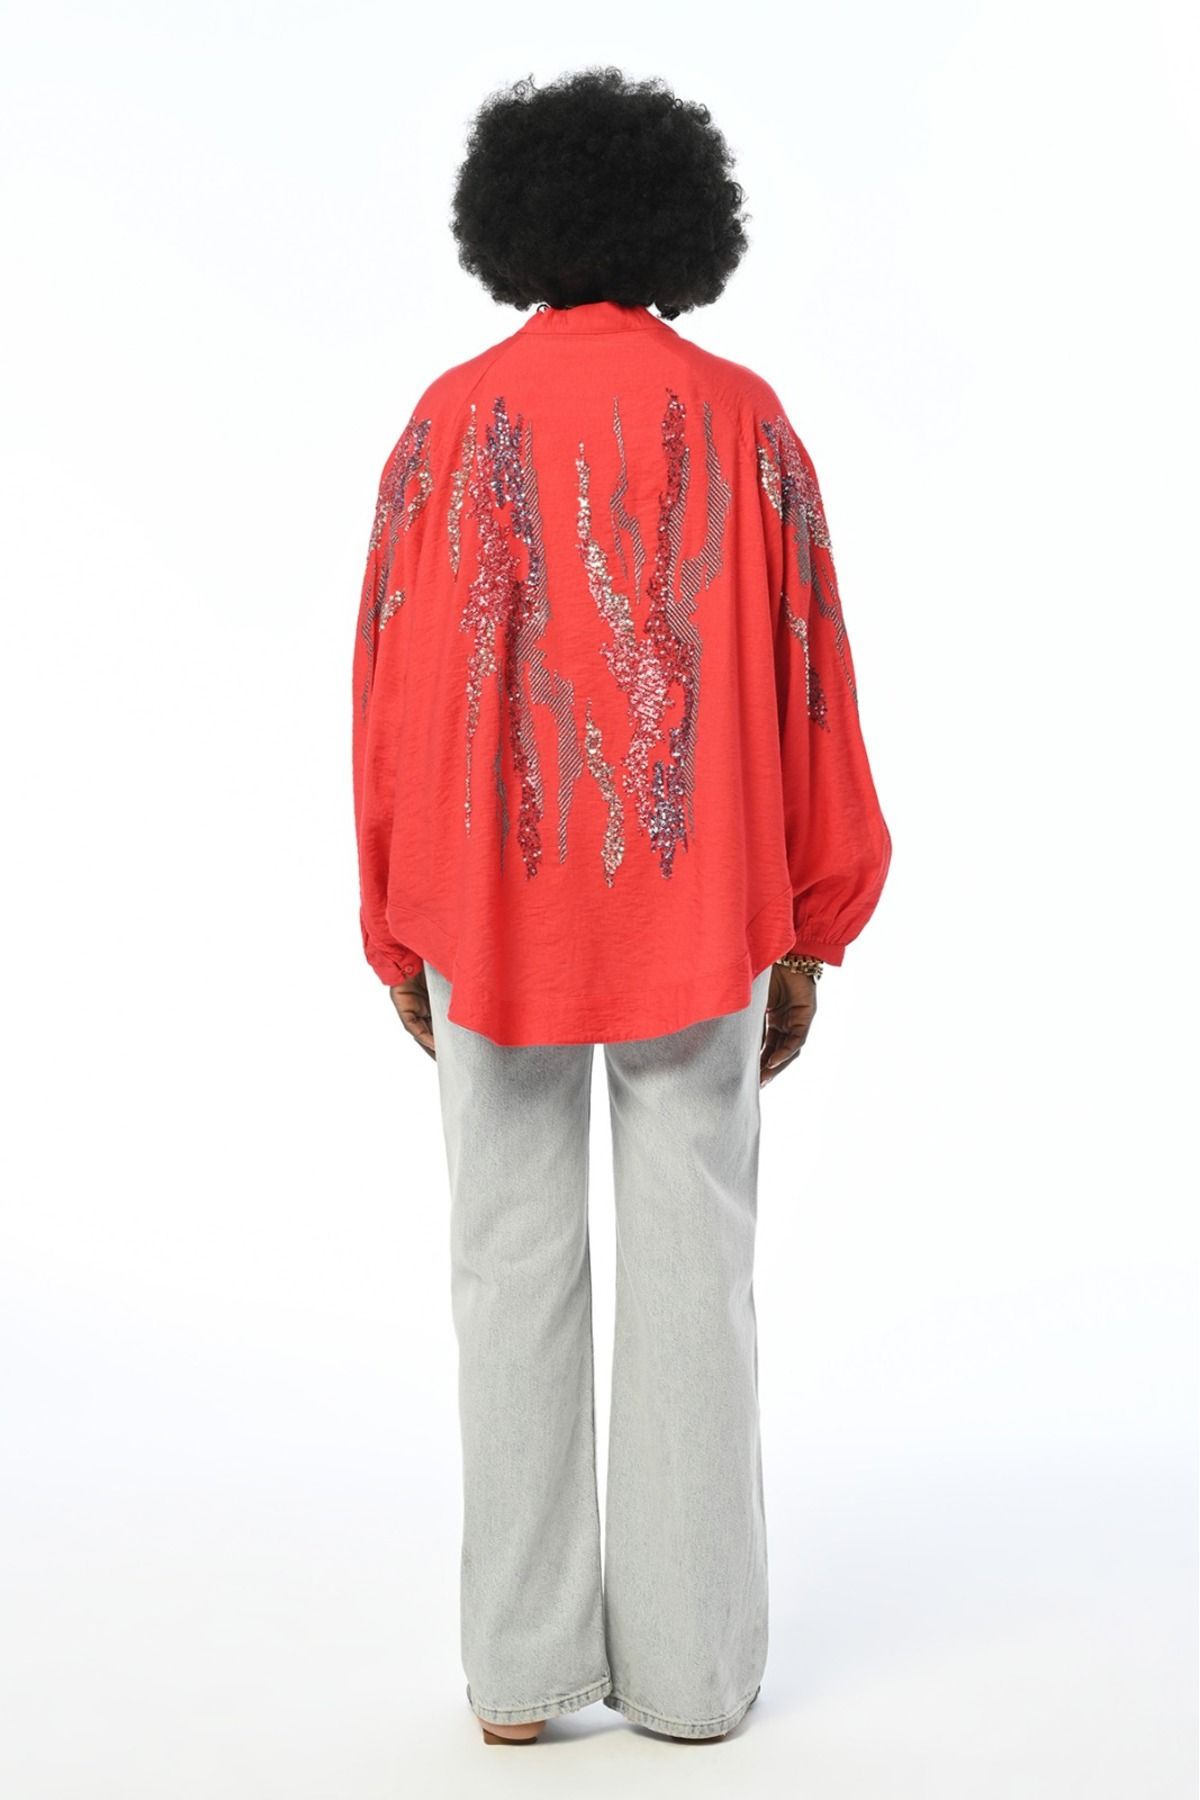 FEMELLE Kadın Mercan Pul Payet Sırtı Ve Kolu Nakış İşlemeli Standart Beden Oversize Kimono Ceket